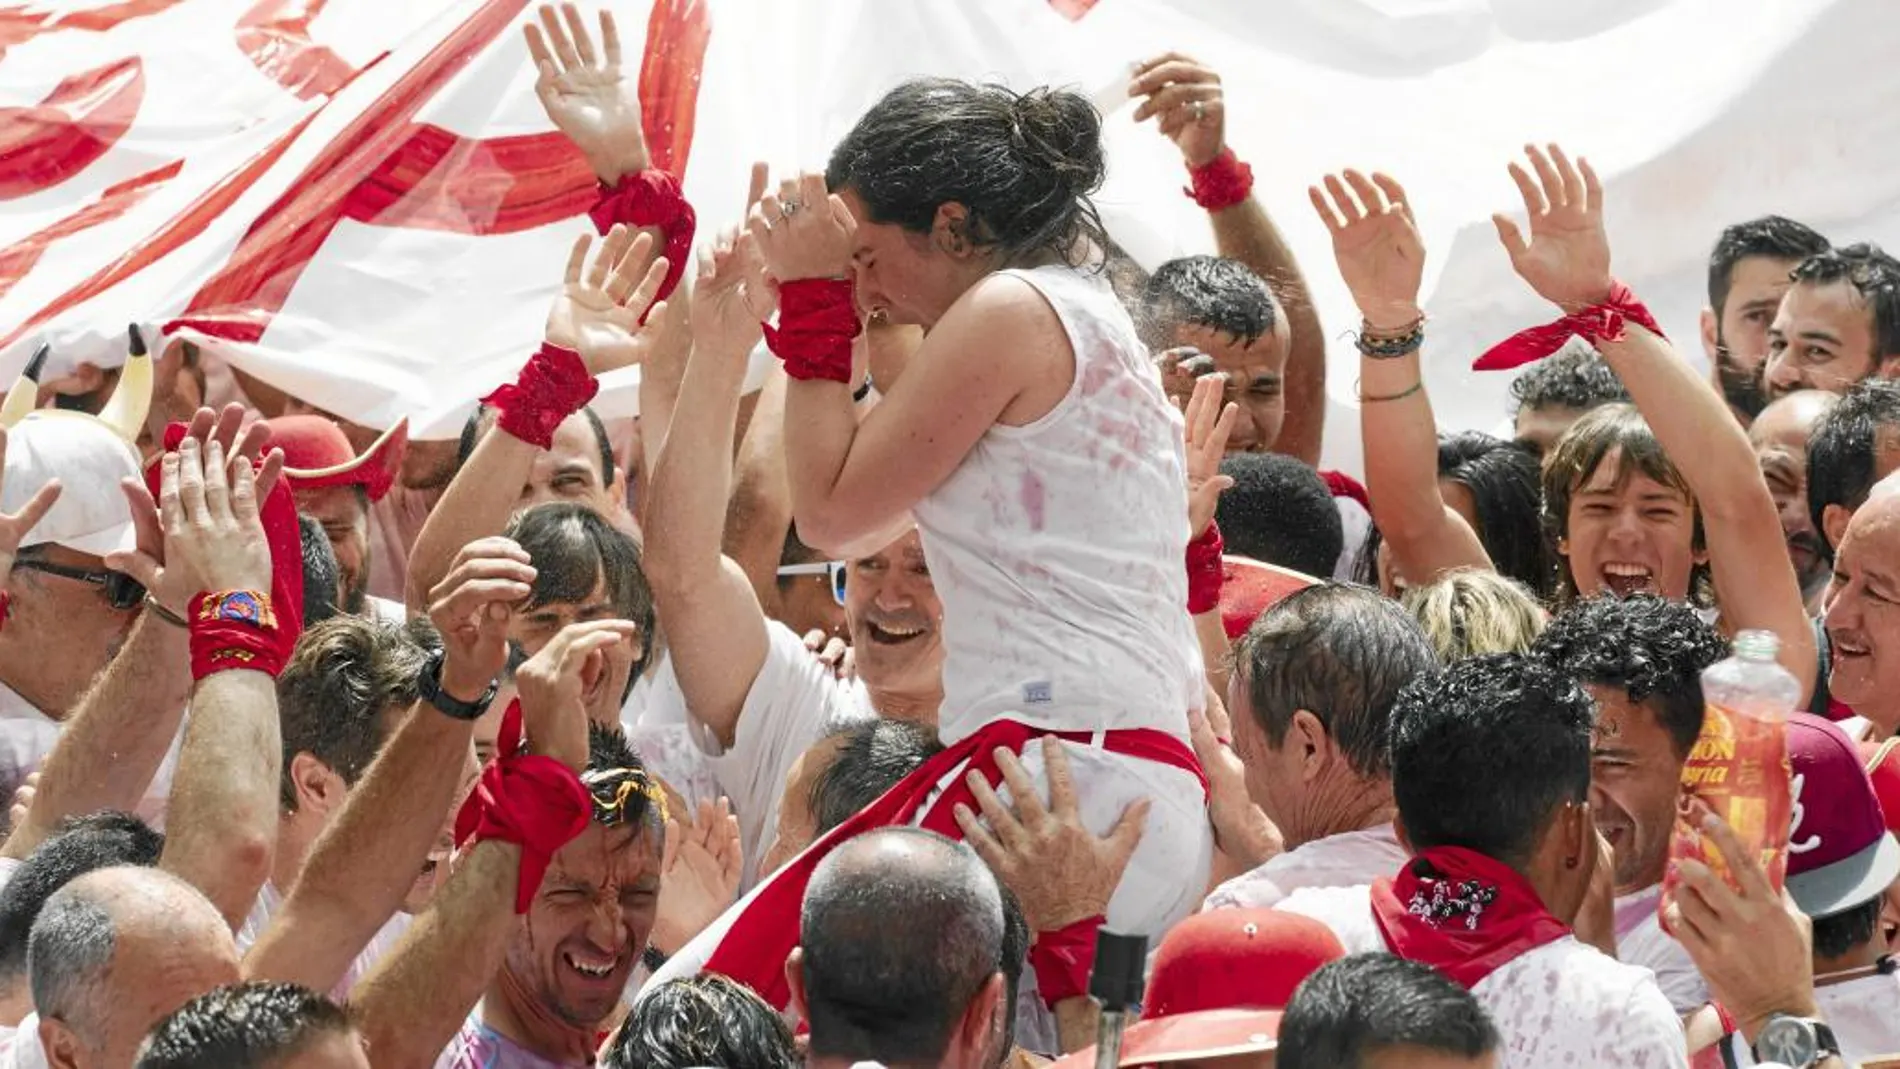 Las denuncias por tocamientos no consentidos son frecuentes en las fiestas de San Fermín, sobre todo durante el chupinazo